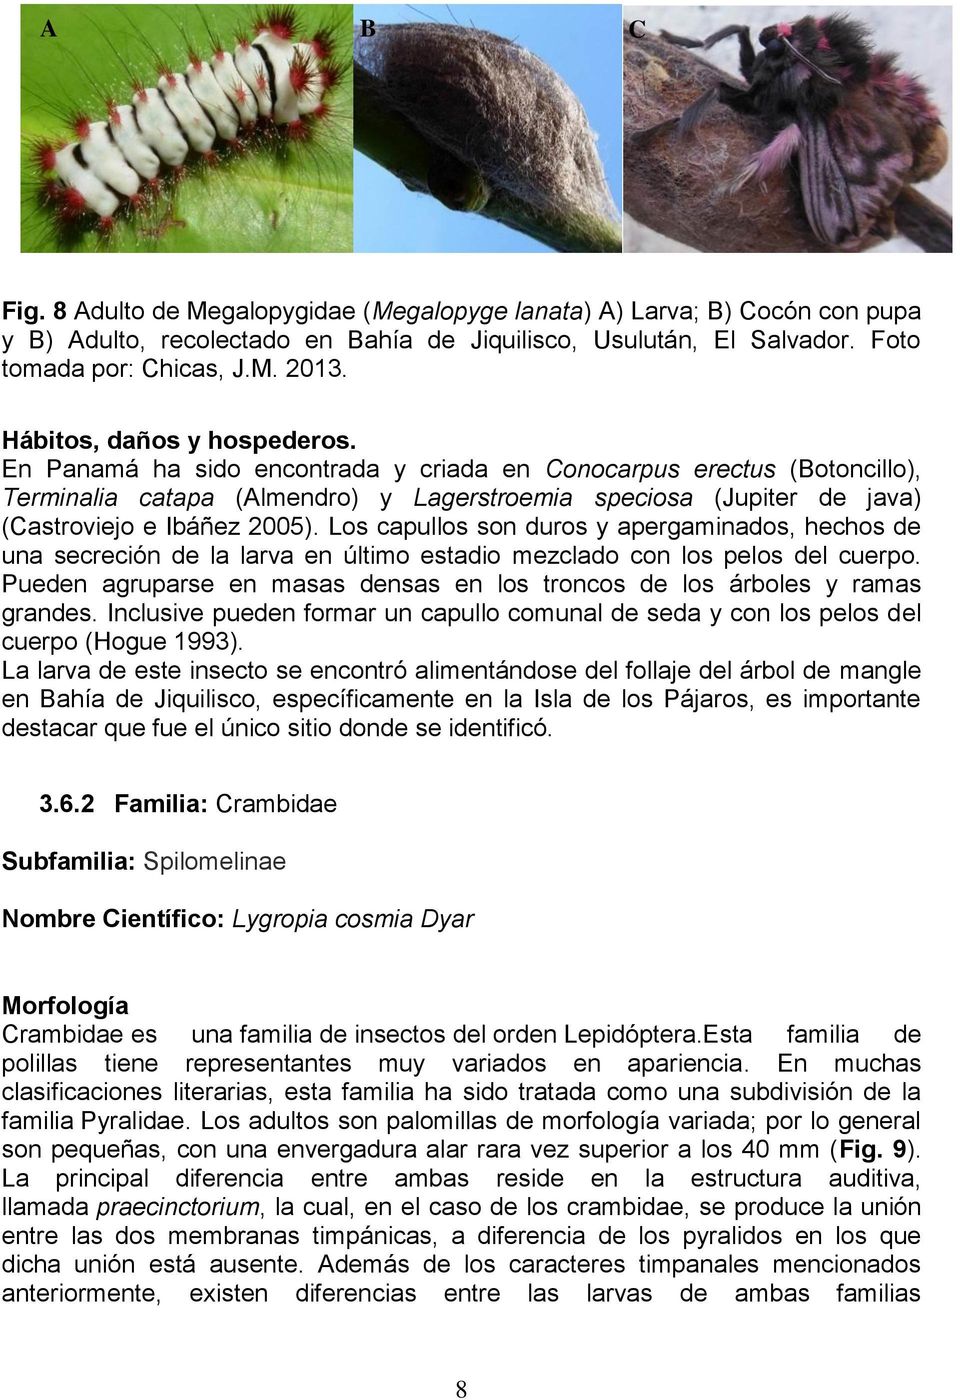 En Panamá ha sido encontrada y criada en Conocarpus erectus (Botoncillo), Terminalia catapa (Almendro) y Lagerstroemia speciosa (Jupiter de java) (Castroviejo e Ibáñez 2005).